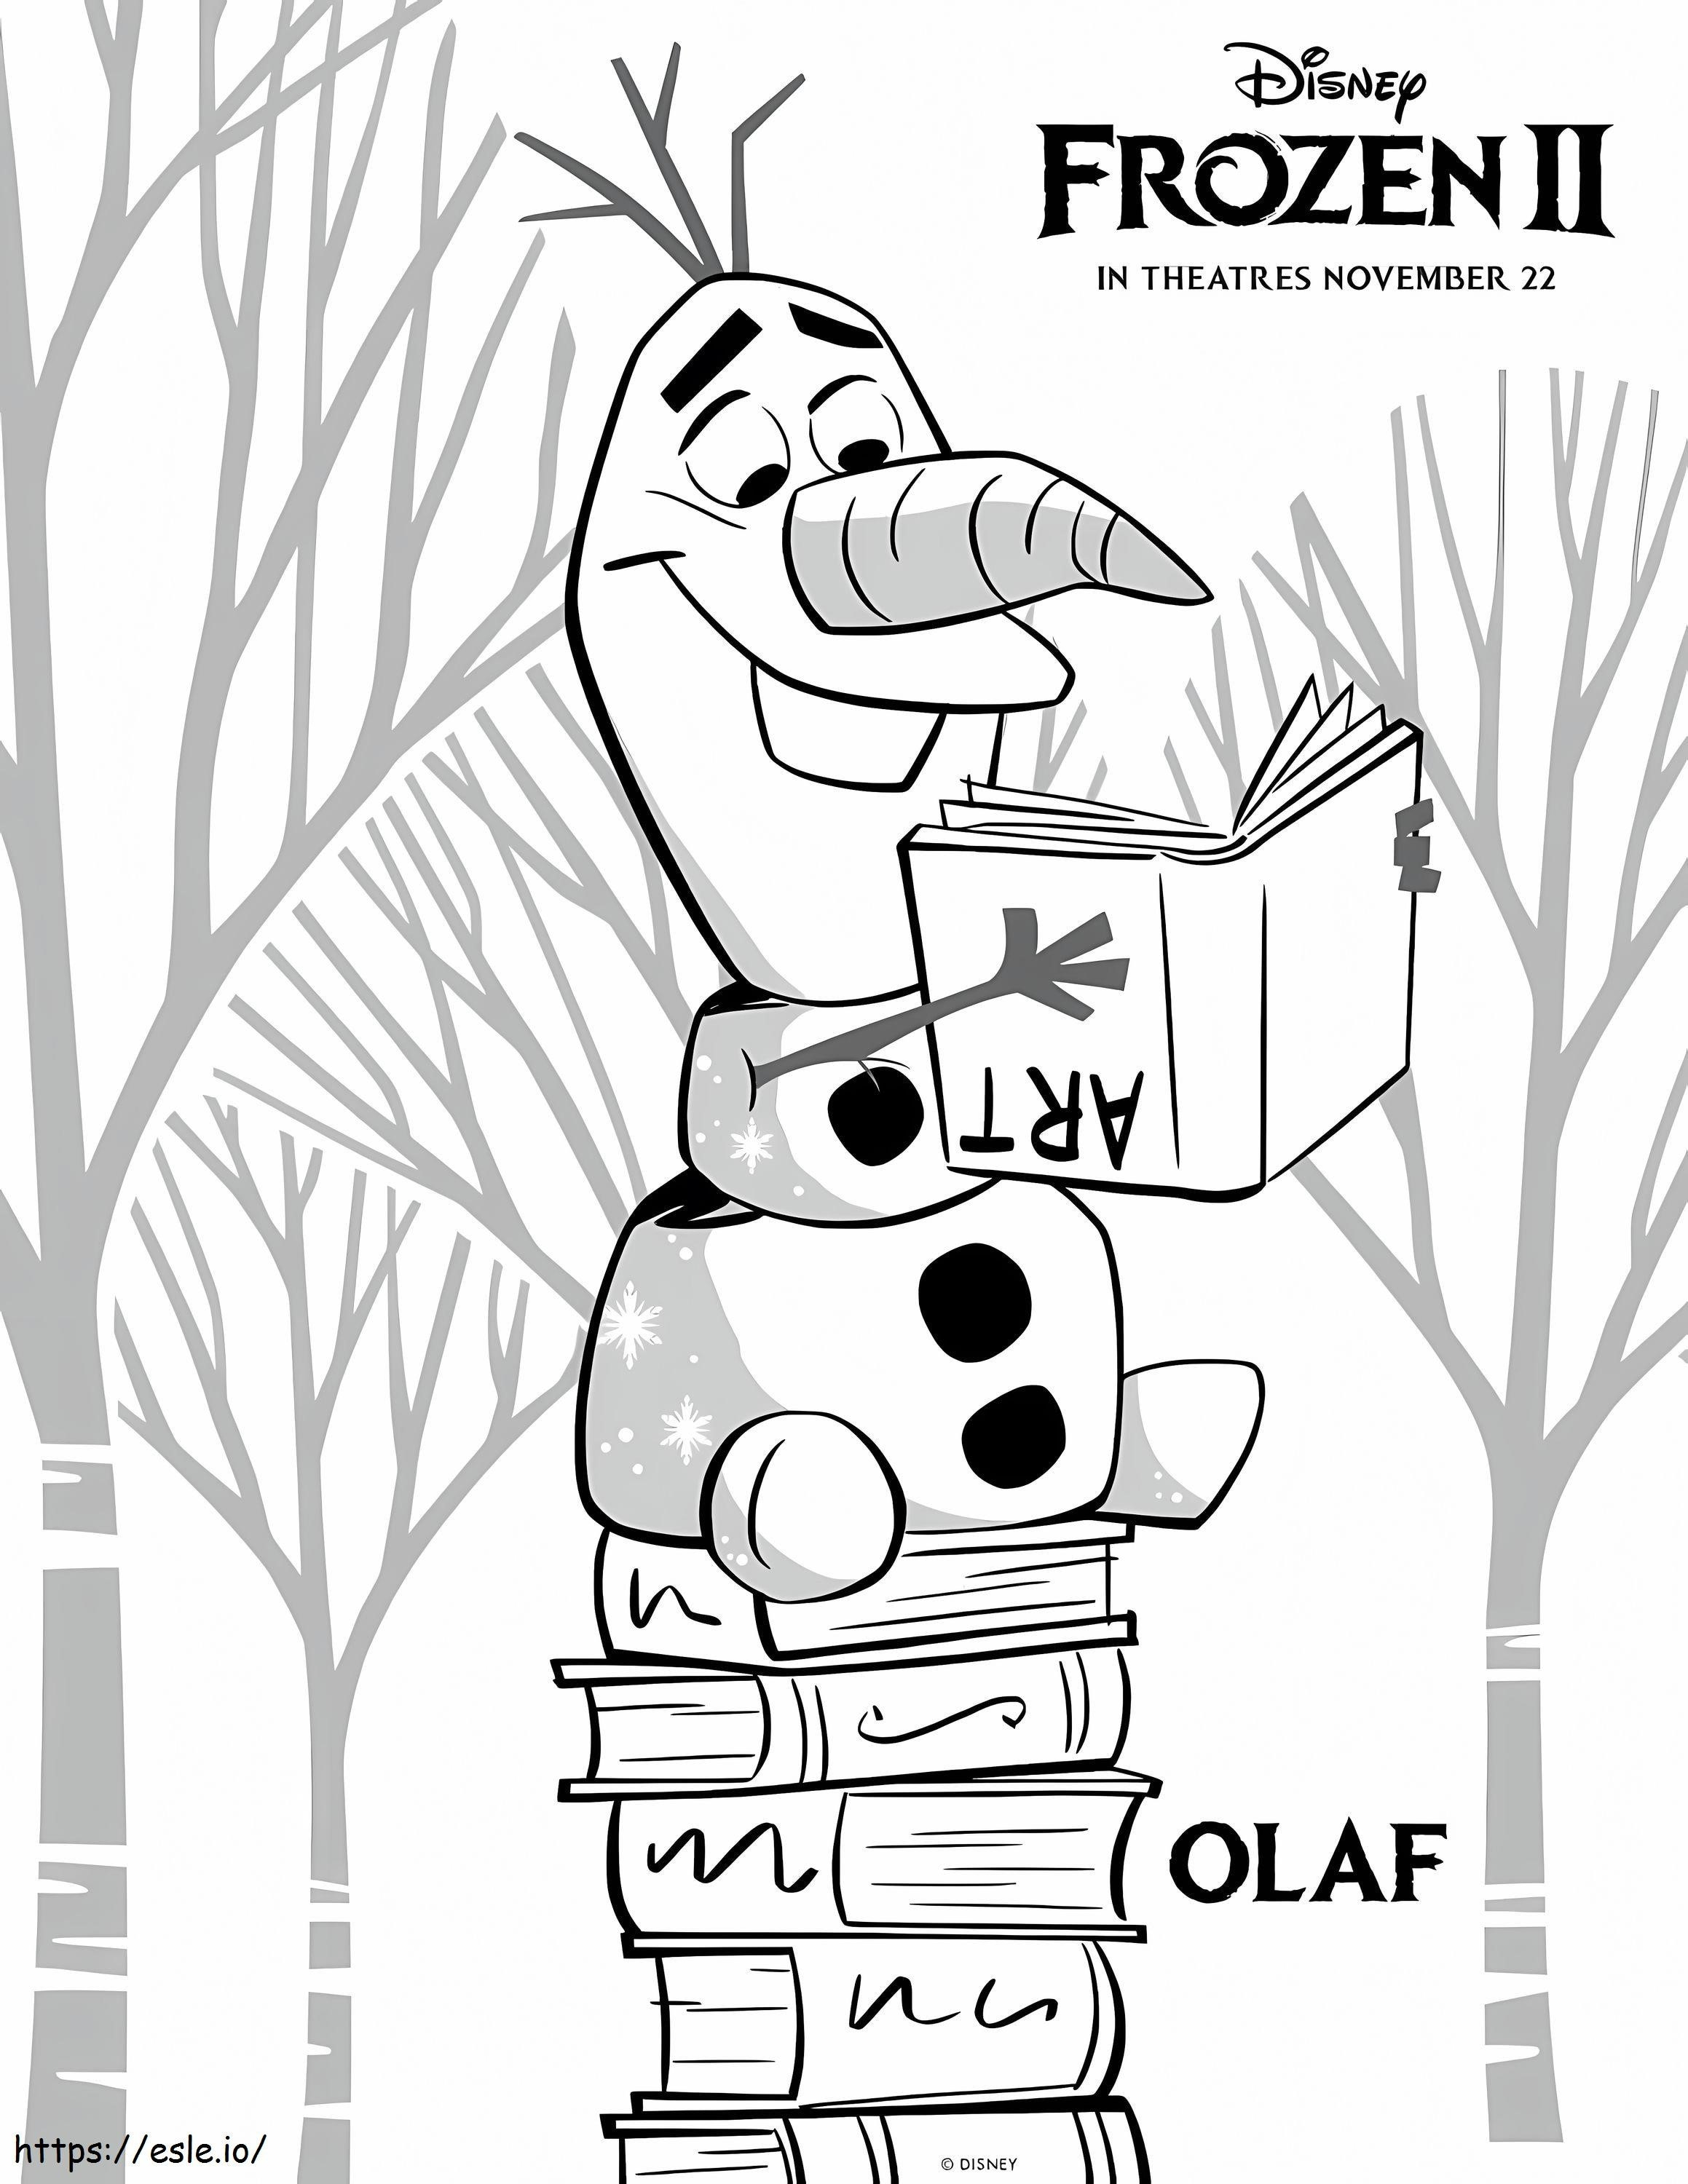 Cartea de lectură a lui Olaf de colorat